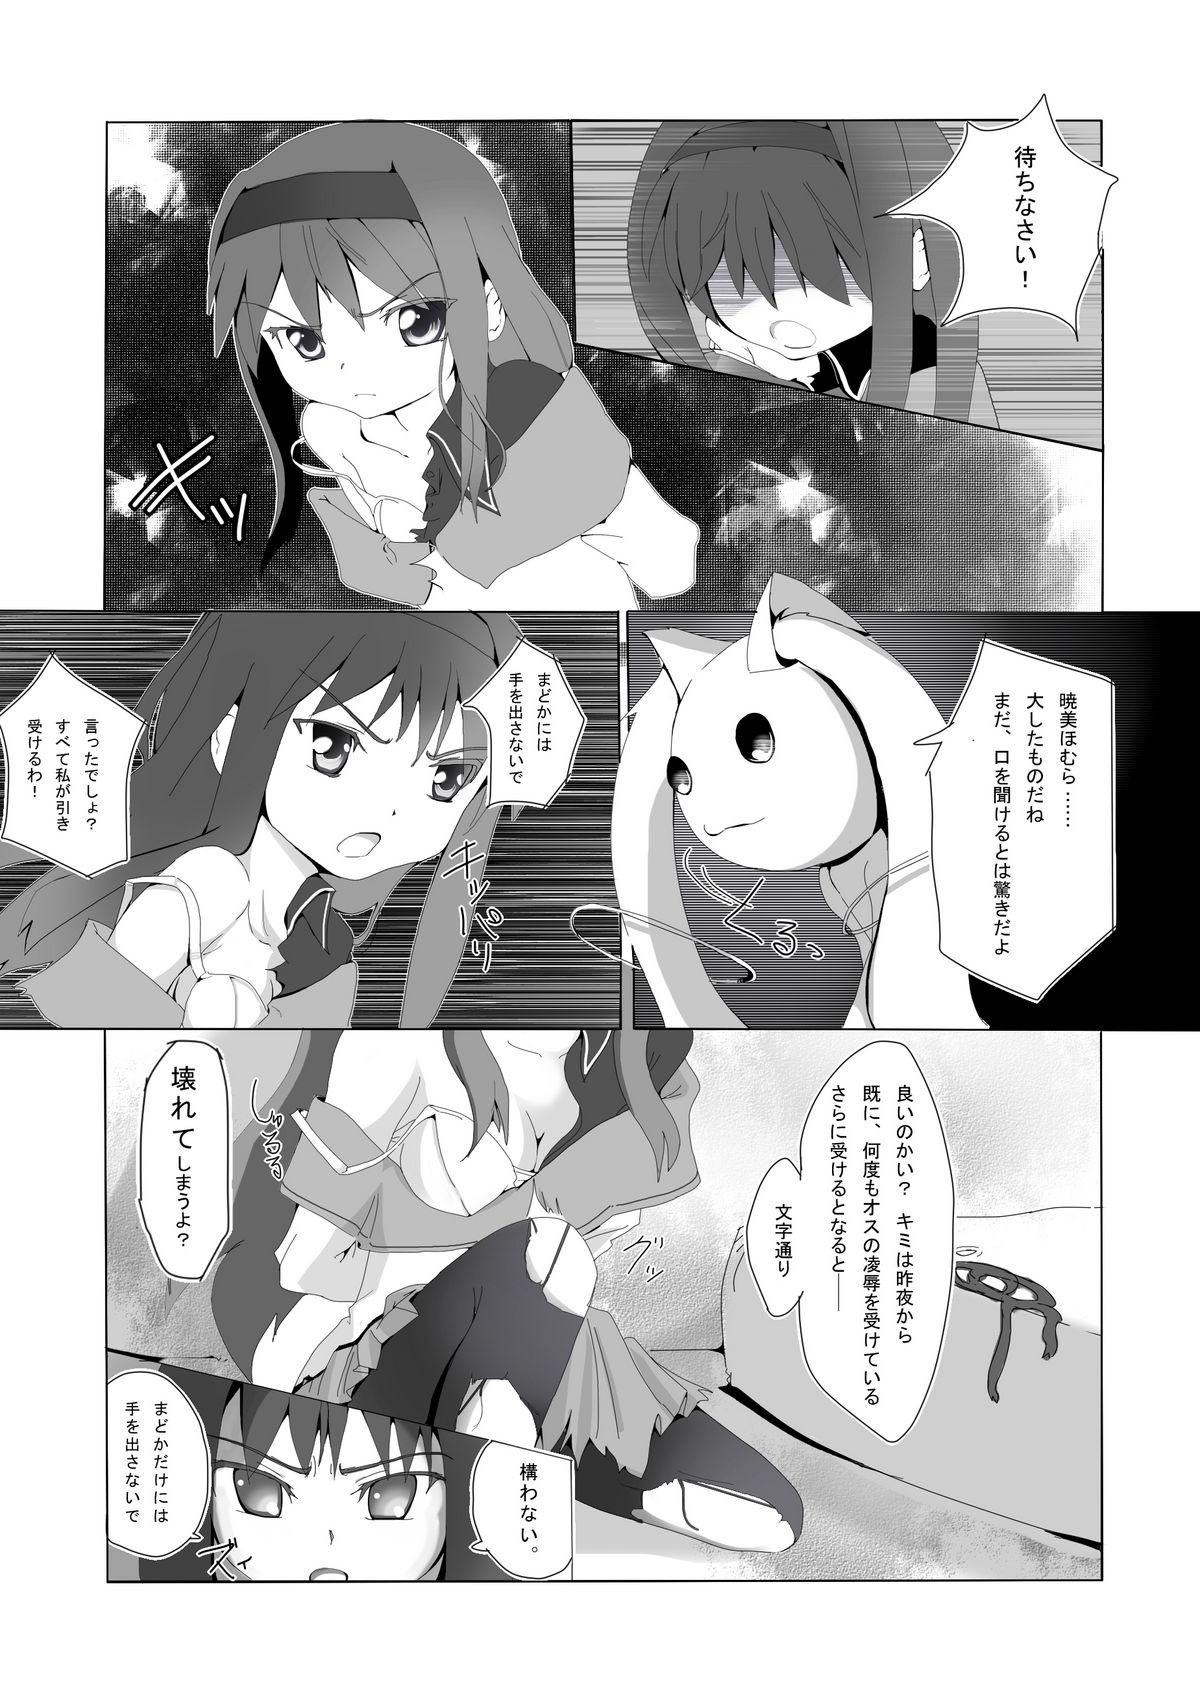 Asian Homura-chan to QB... - Puella magi madoka magica Pickup - Page 4